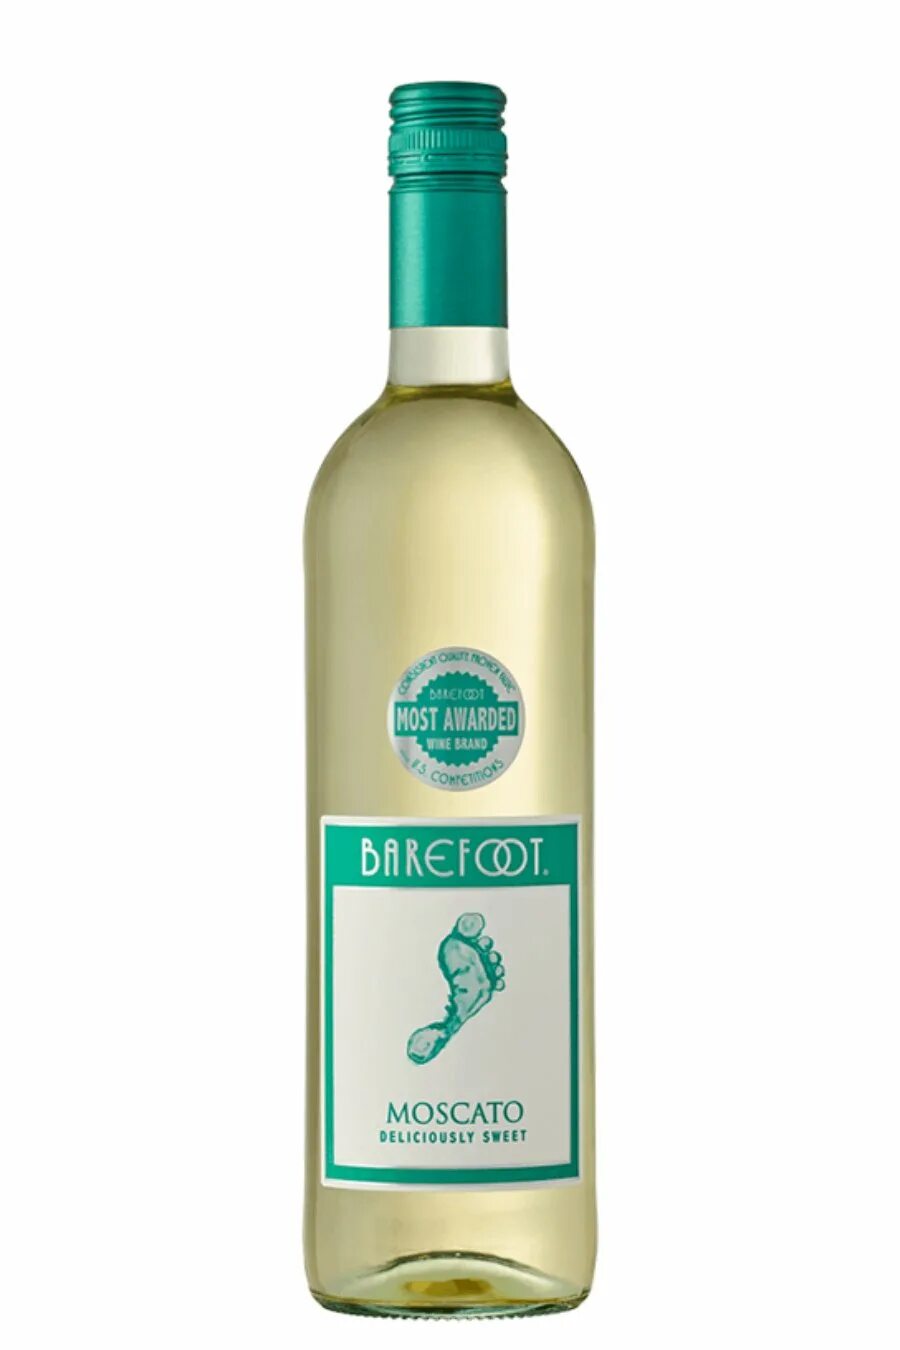 Берфут Пино Гриджио. Вино barefoot Moscato 0.75 л. Вино barefoot Пино Гриджио, 0,75 л. Берфут Москато. Купить вино москато